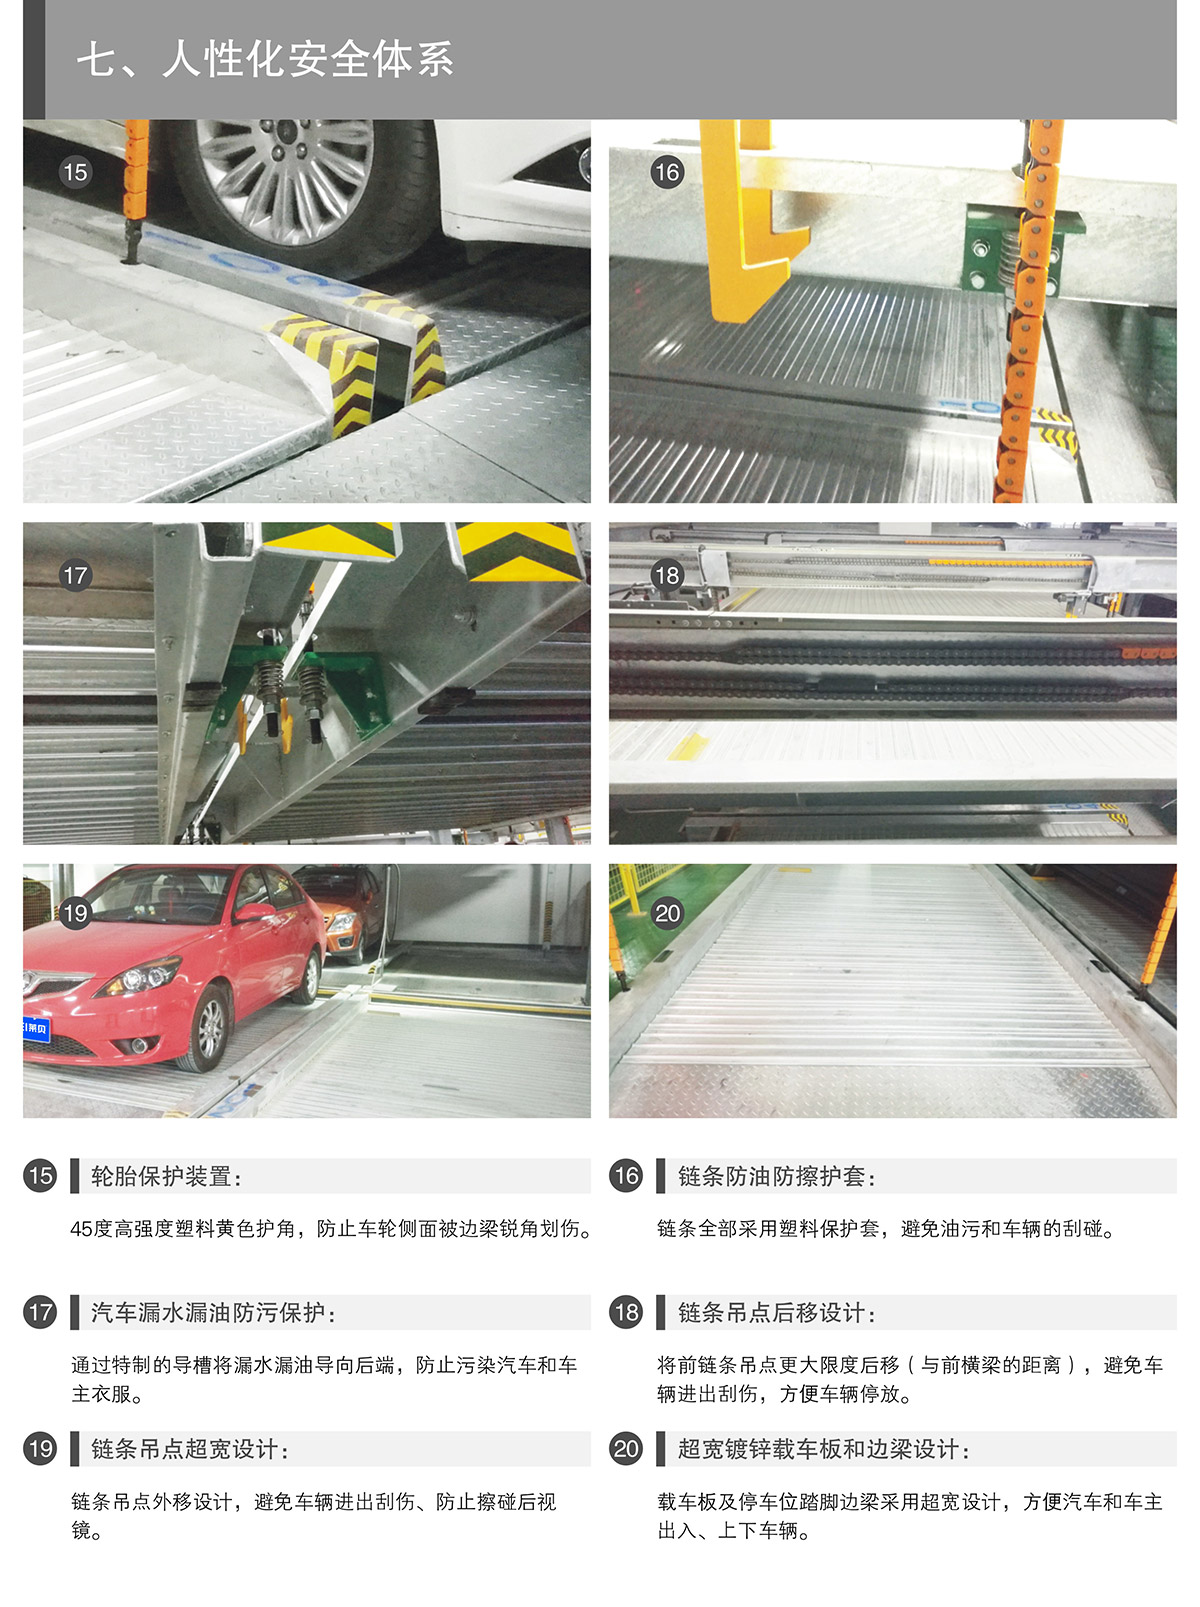 四川PSH2单列两层升降横移类机械式立体停车设备人性化安全体系.jpg